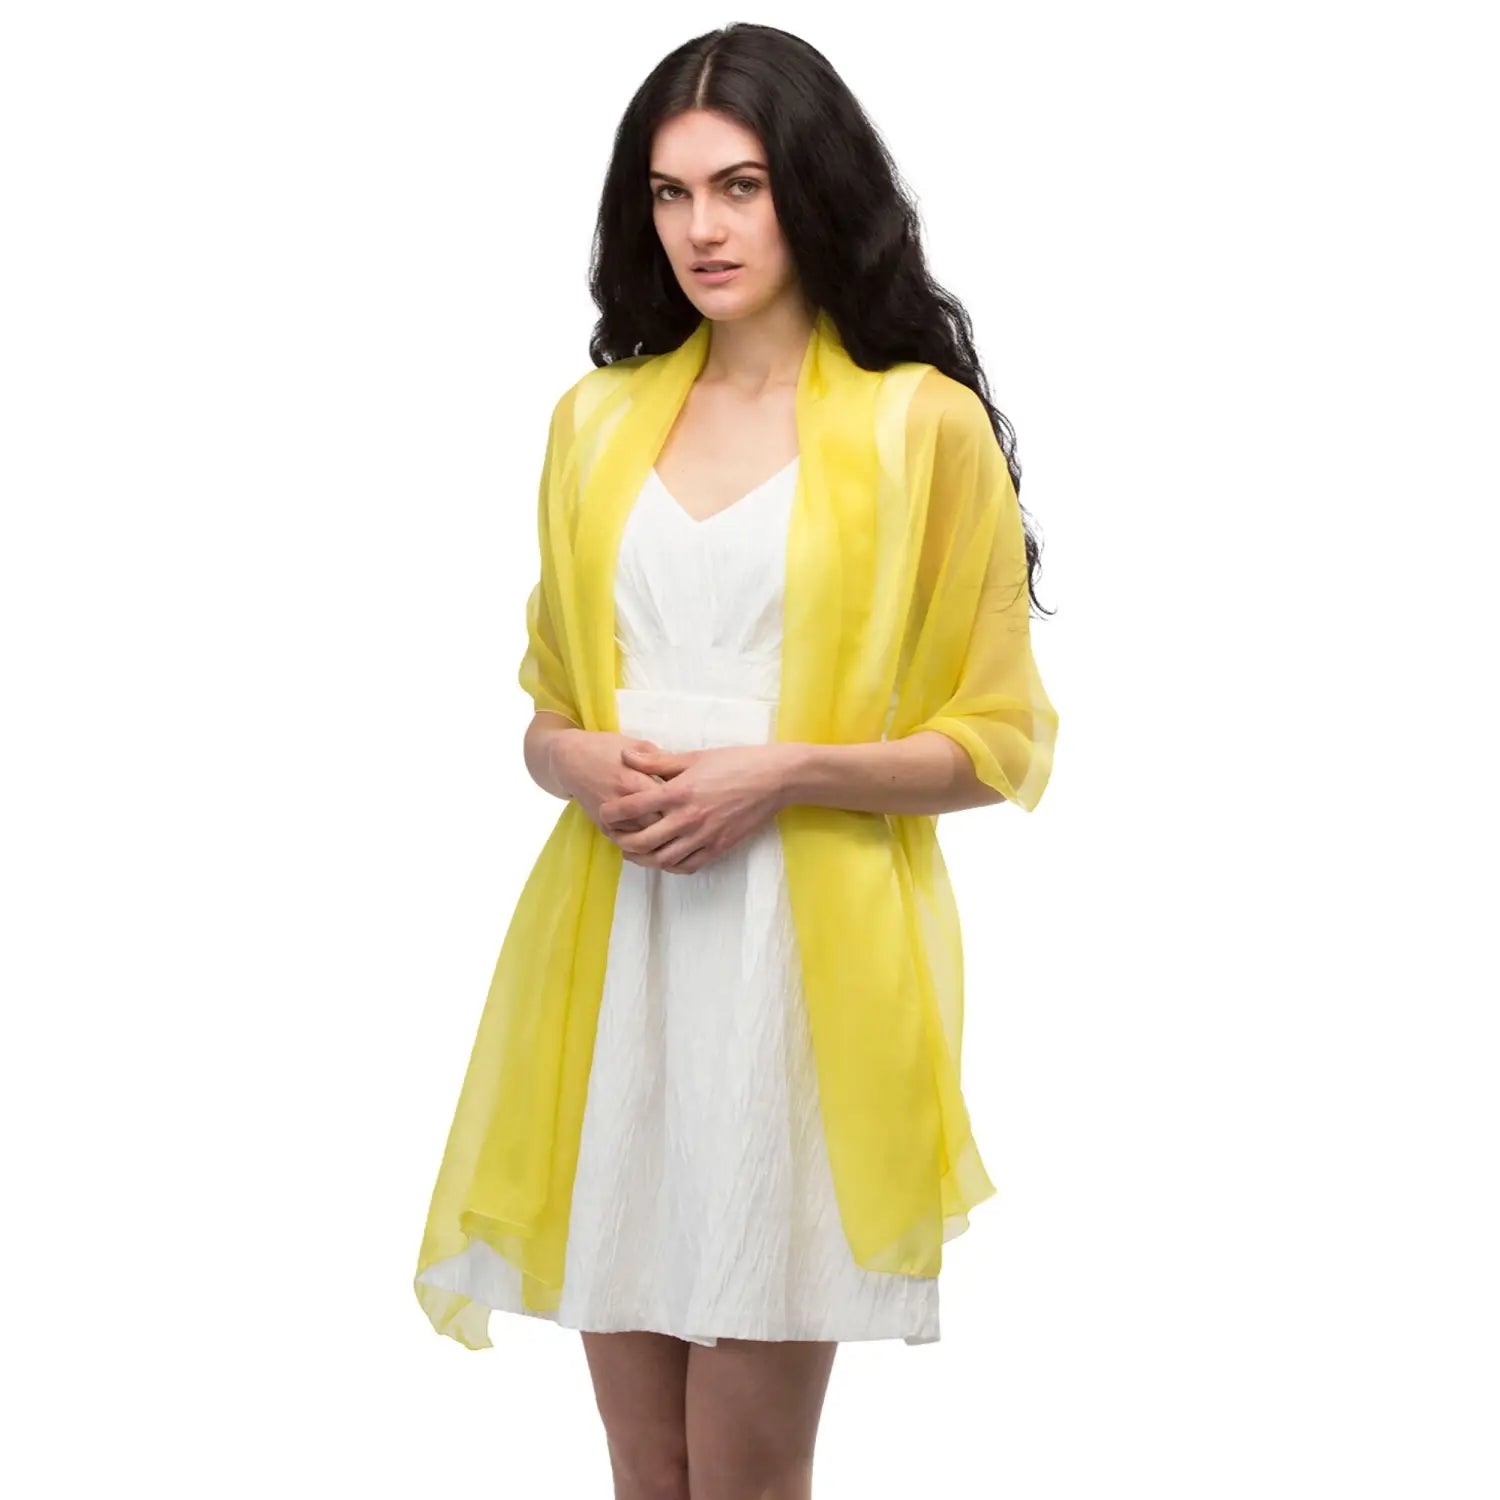 Woman wearing yellow chiffon shawl by Versatile Scarf